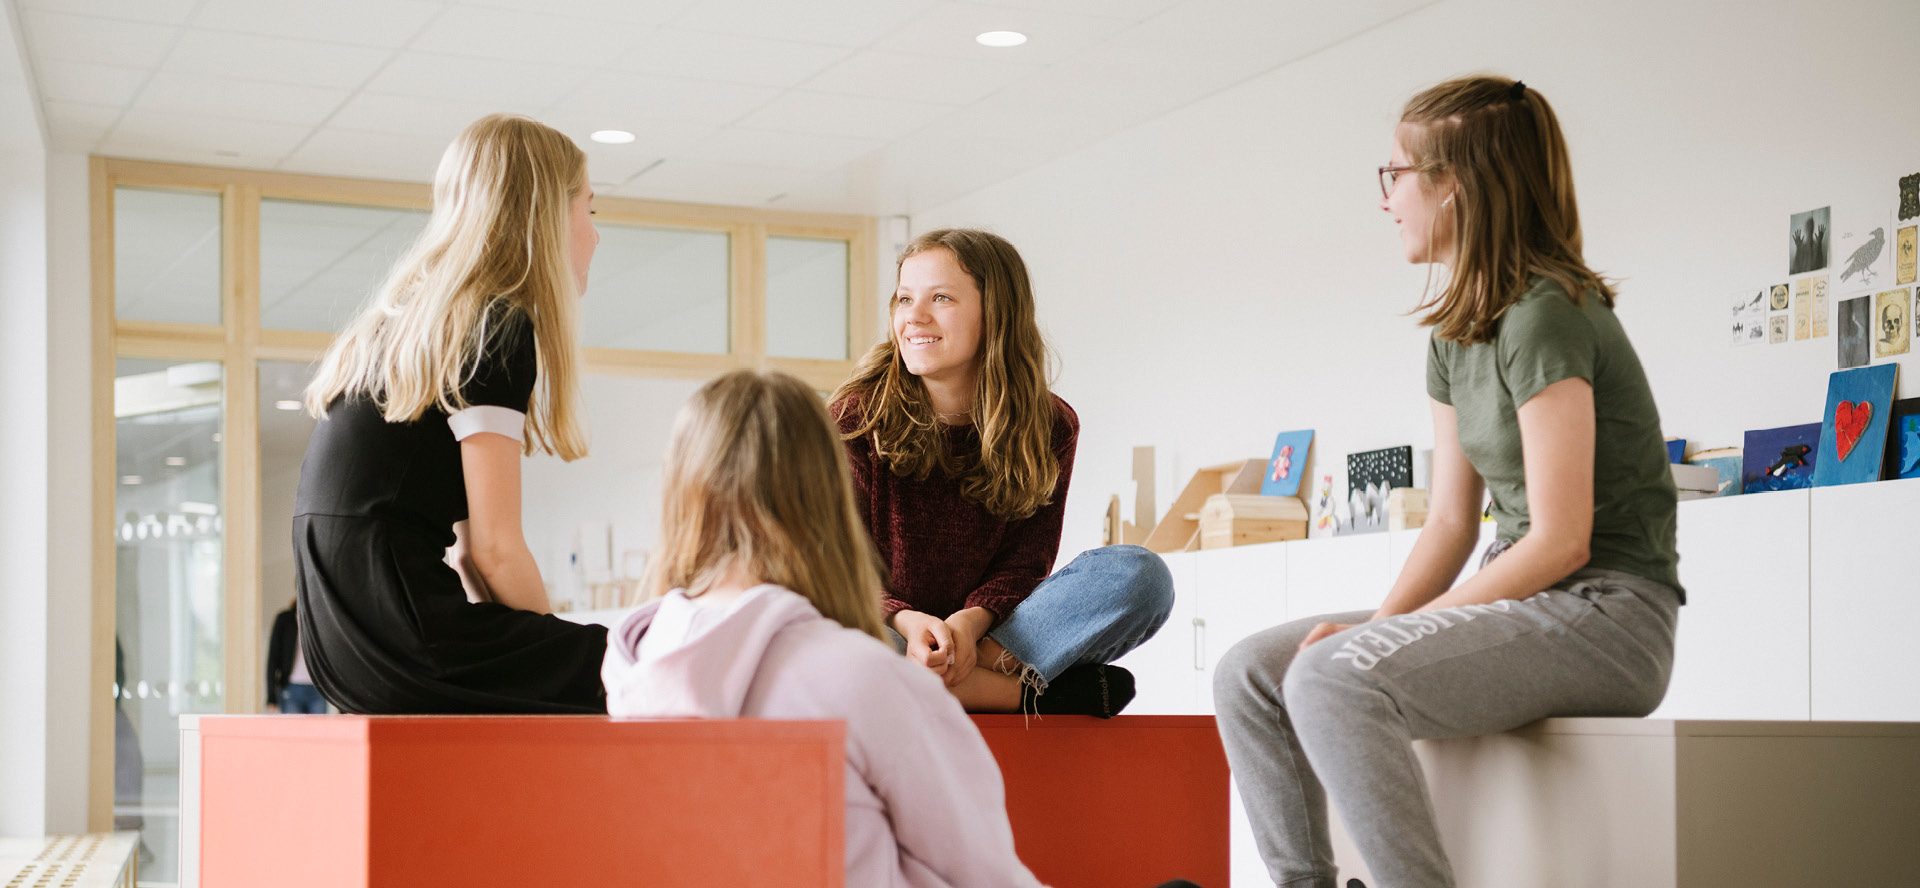 Fyra elever i högstadiet som pratar med varandra i en ljus skolmiljö